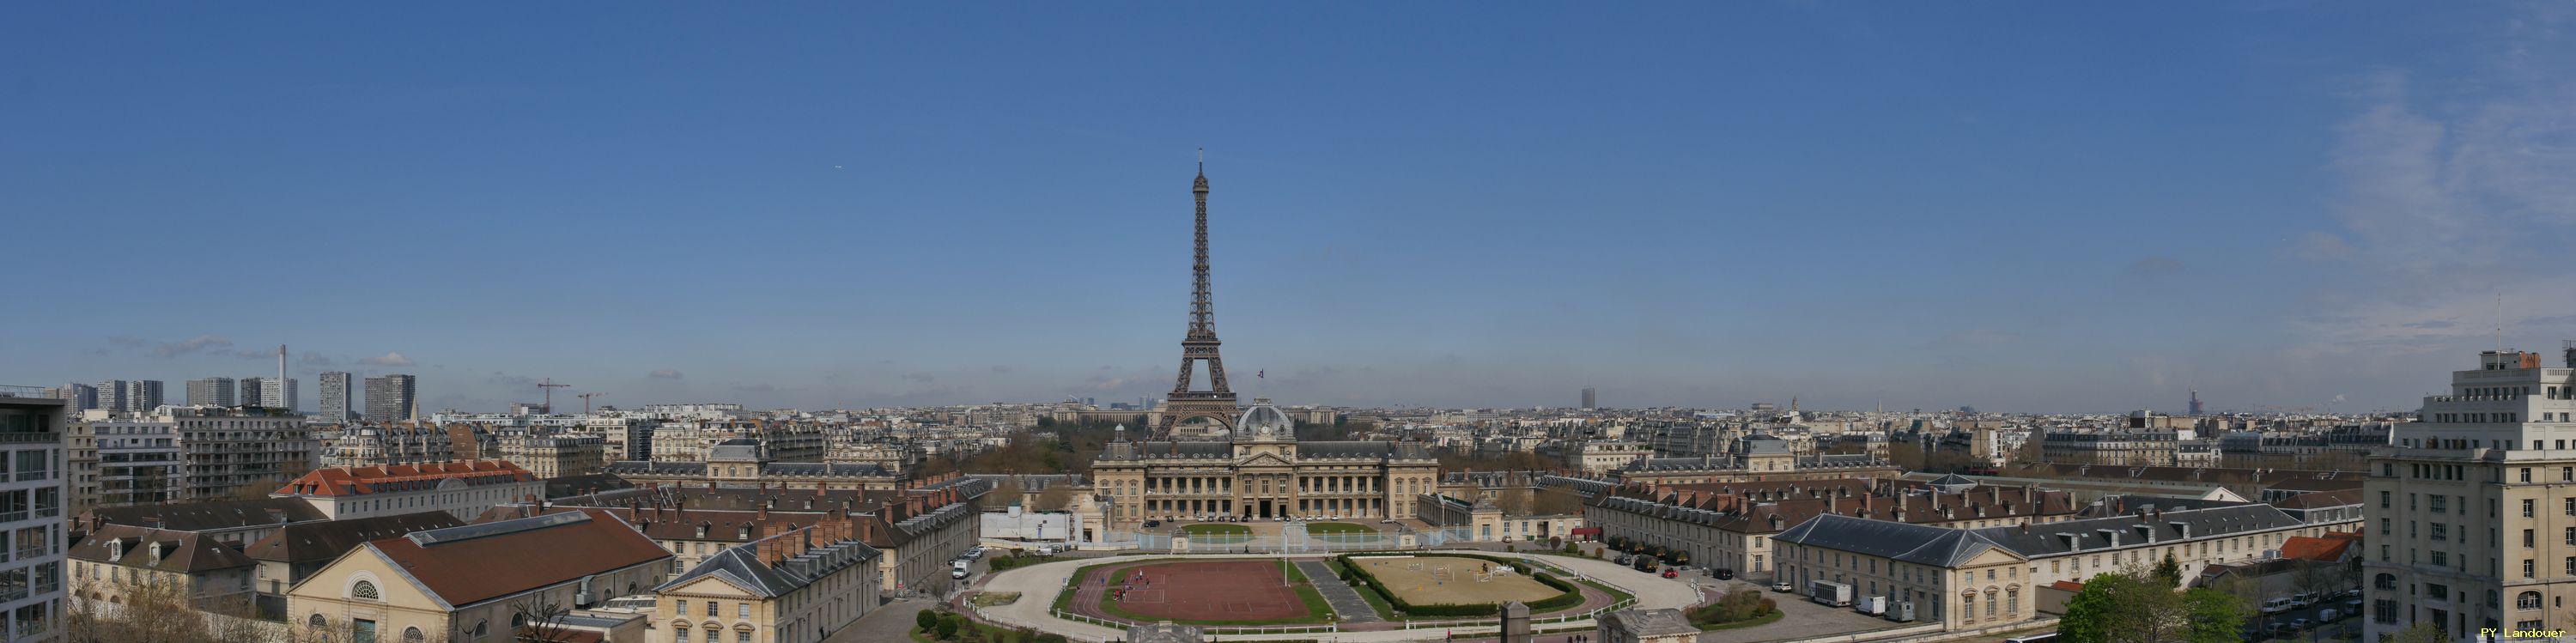 Paris vu d'en haut, Tour Eiffel, Place de Fontenoy